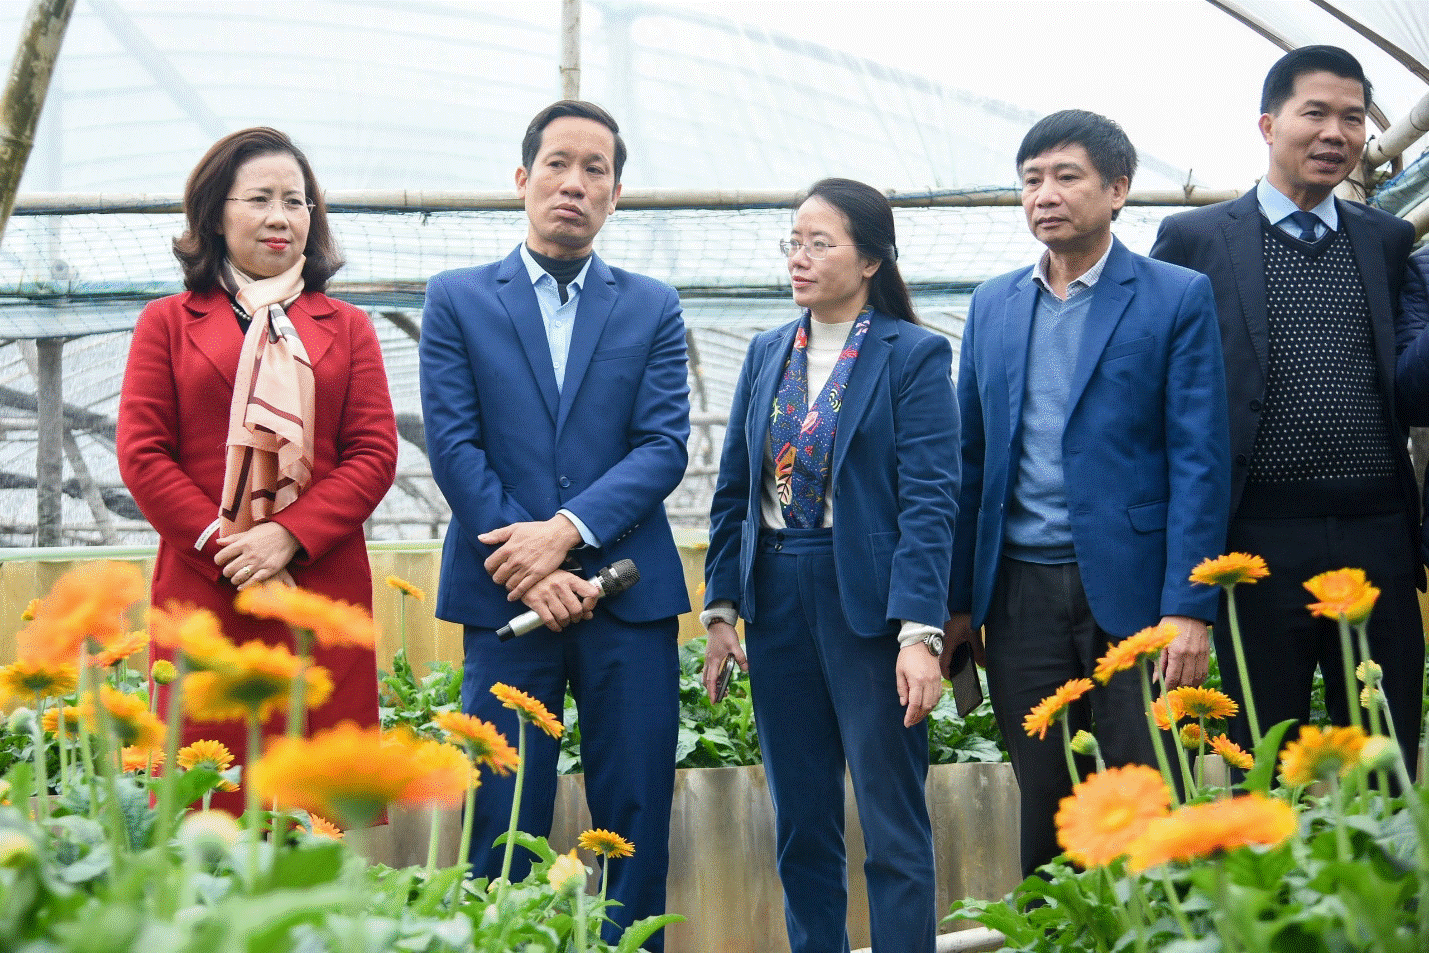 Khoa học công nghệ góp phần chuyển đổi cơ cấu cây trồng ở Đan Phượng, Hà Nội.